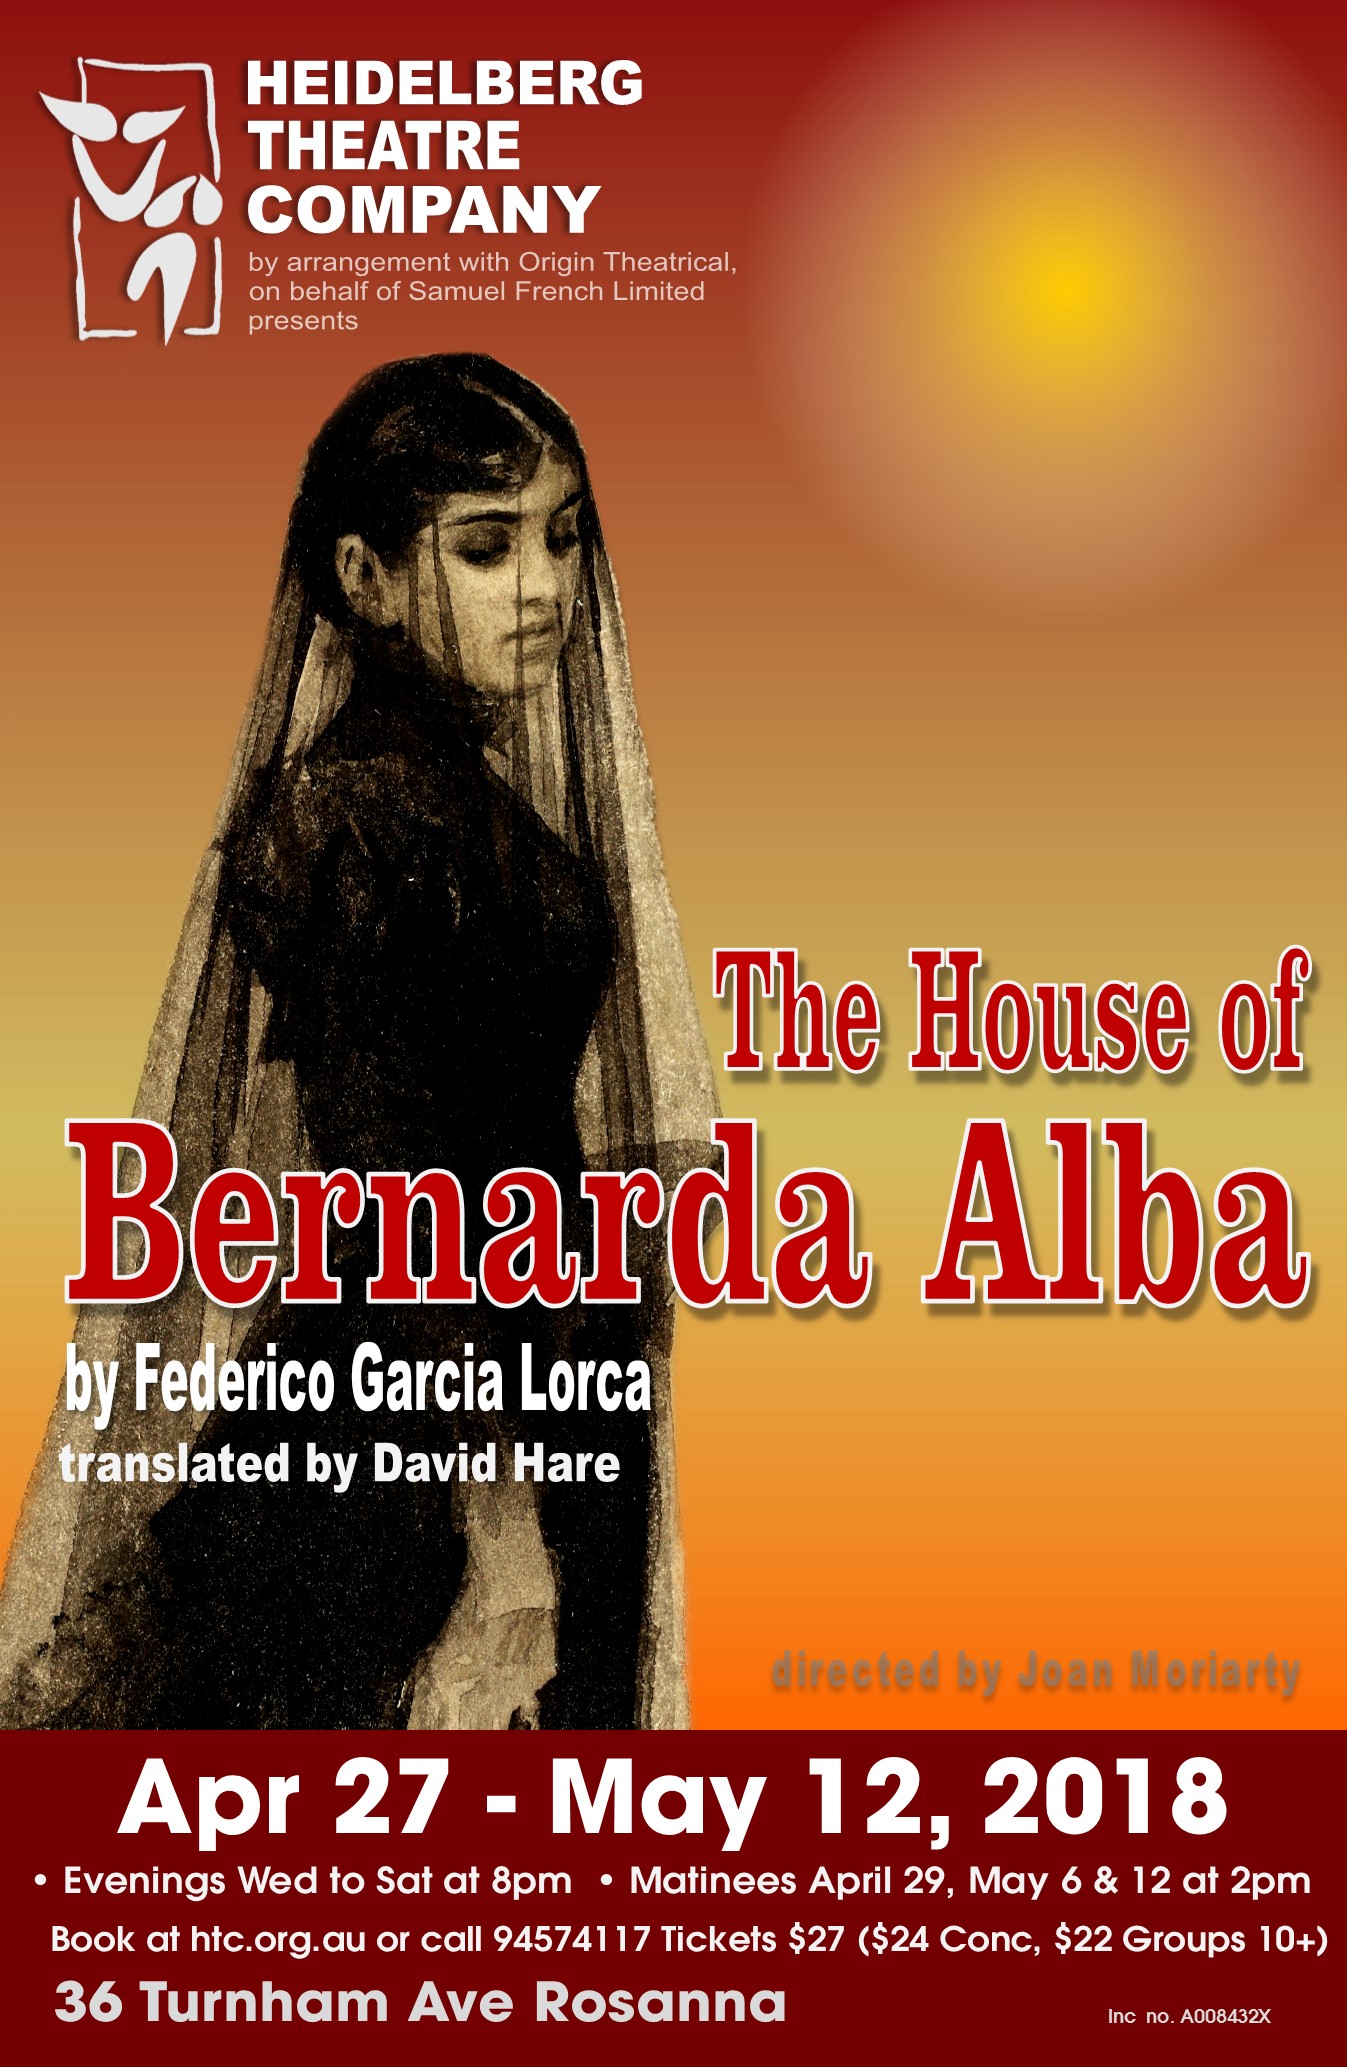 The House of Bernardo Alba